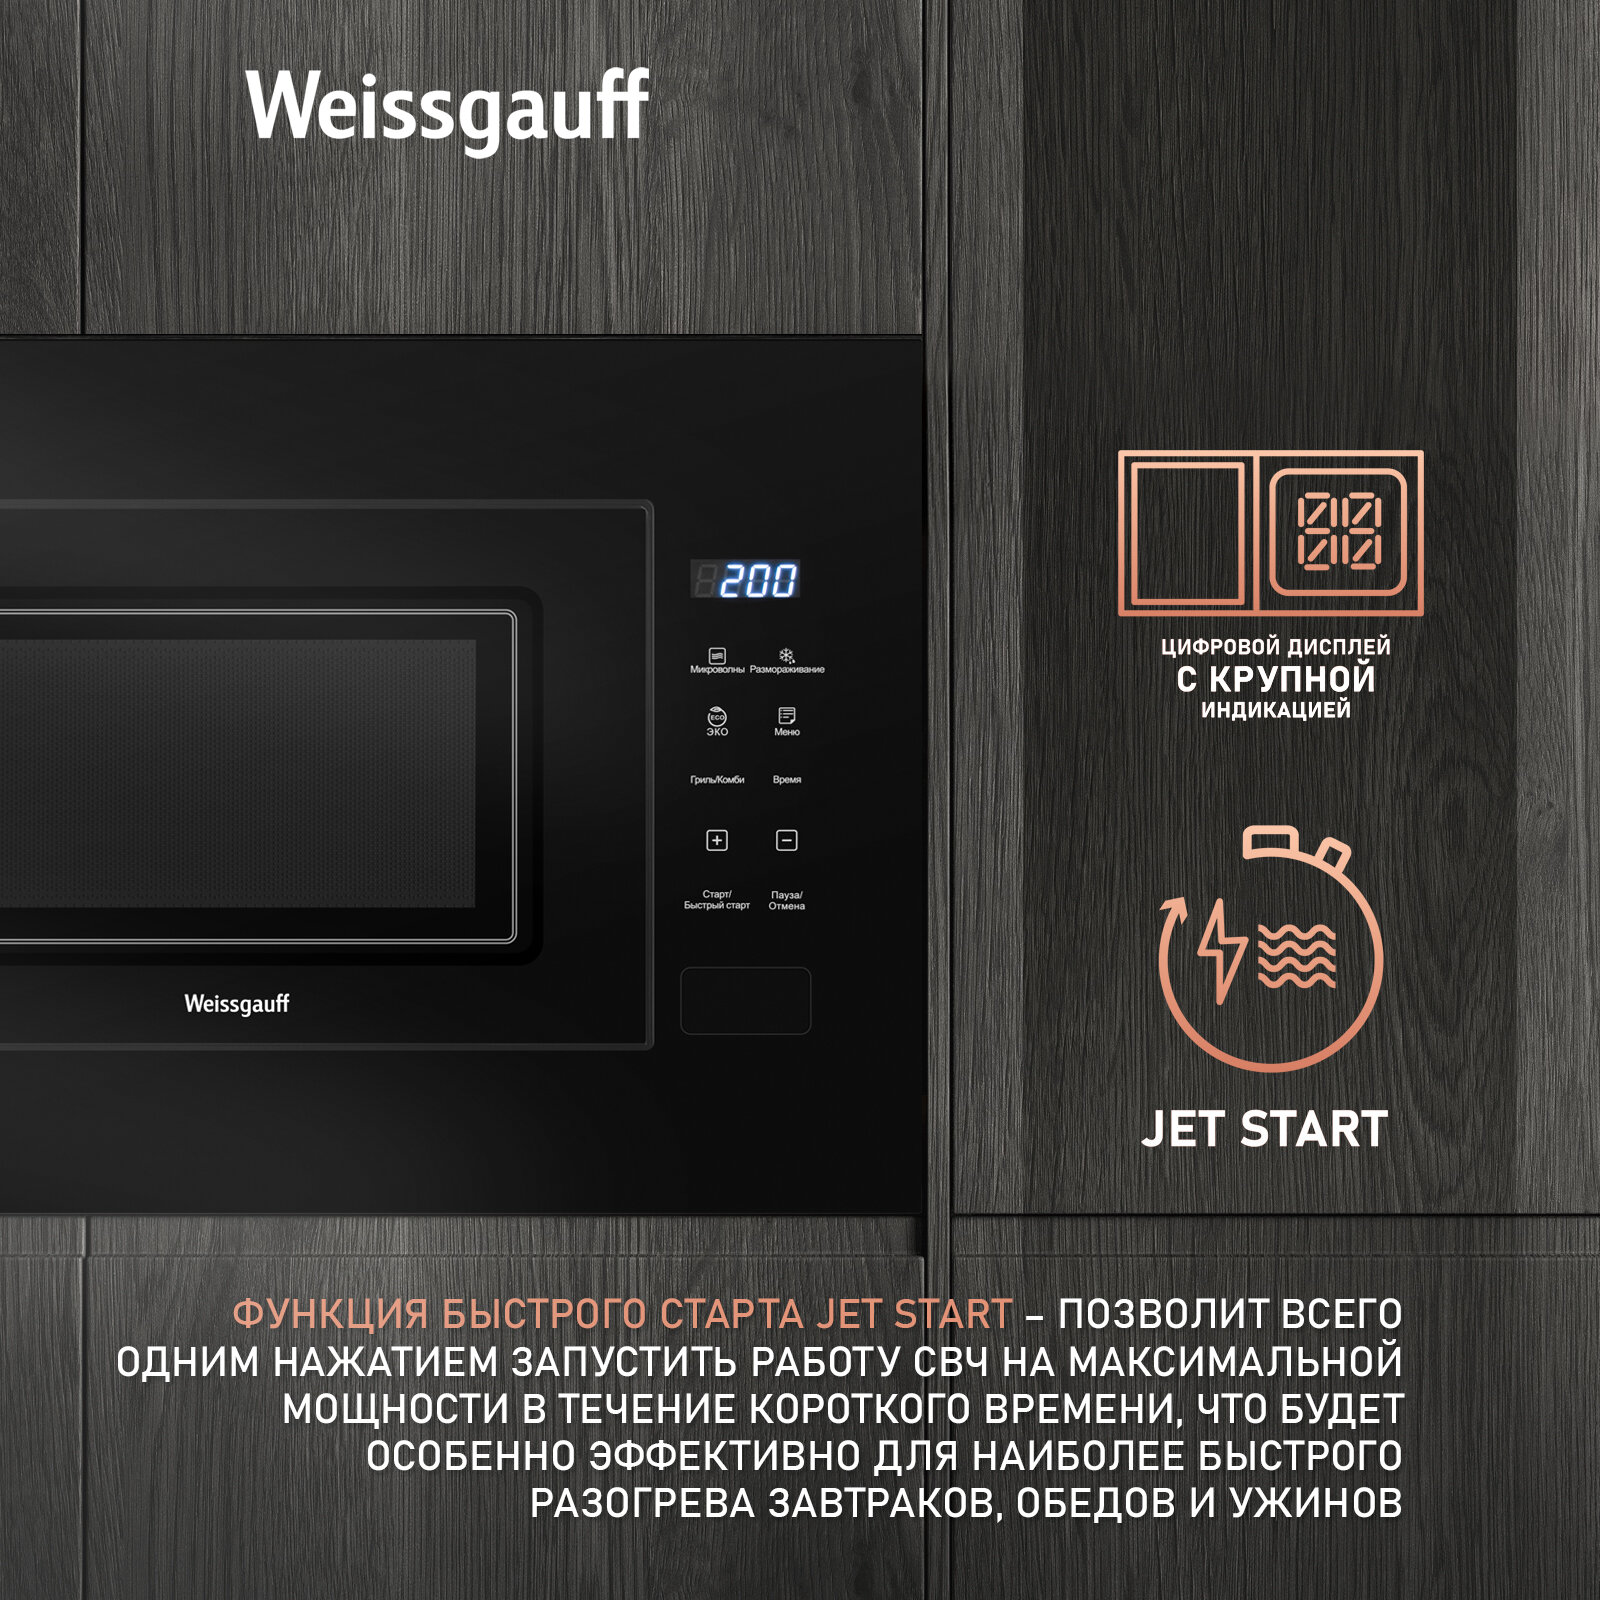 Встраиваемая микроволновая печь Weissgauff HMT-206 Compact Grill 3 года гарантии, объем 20 литров, гриль, разморозка по весу